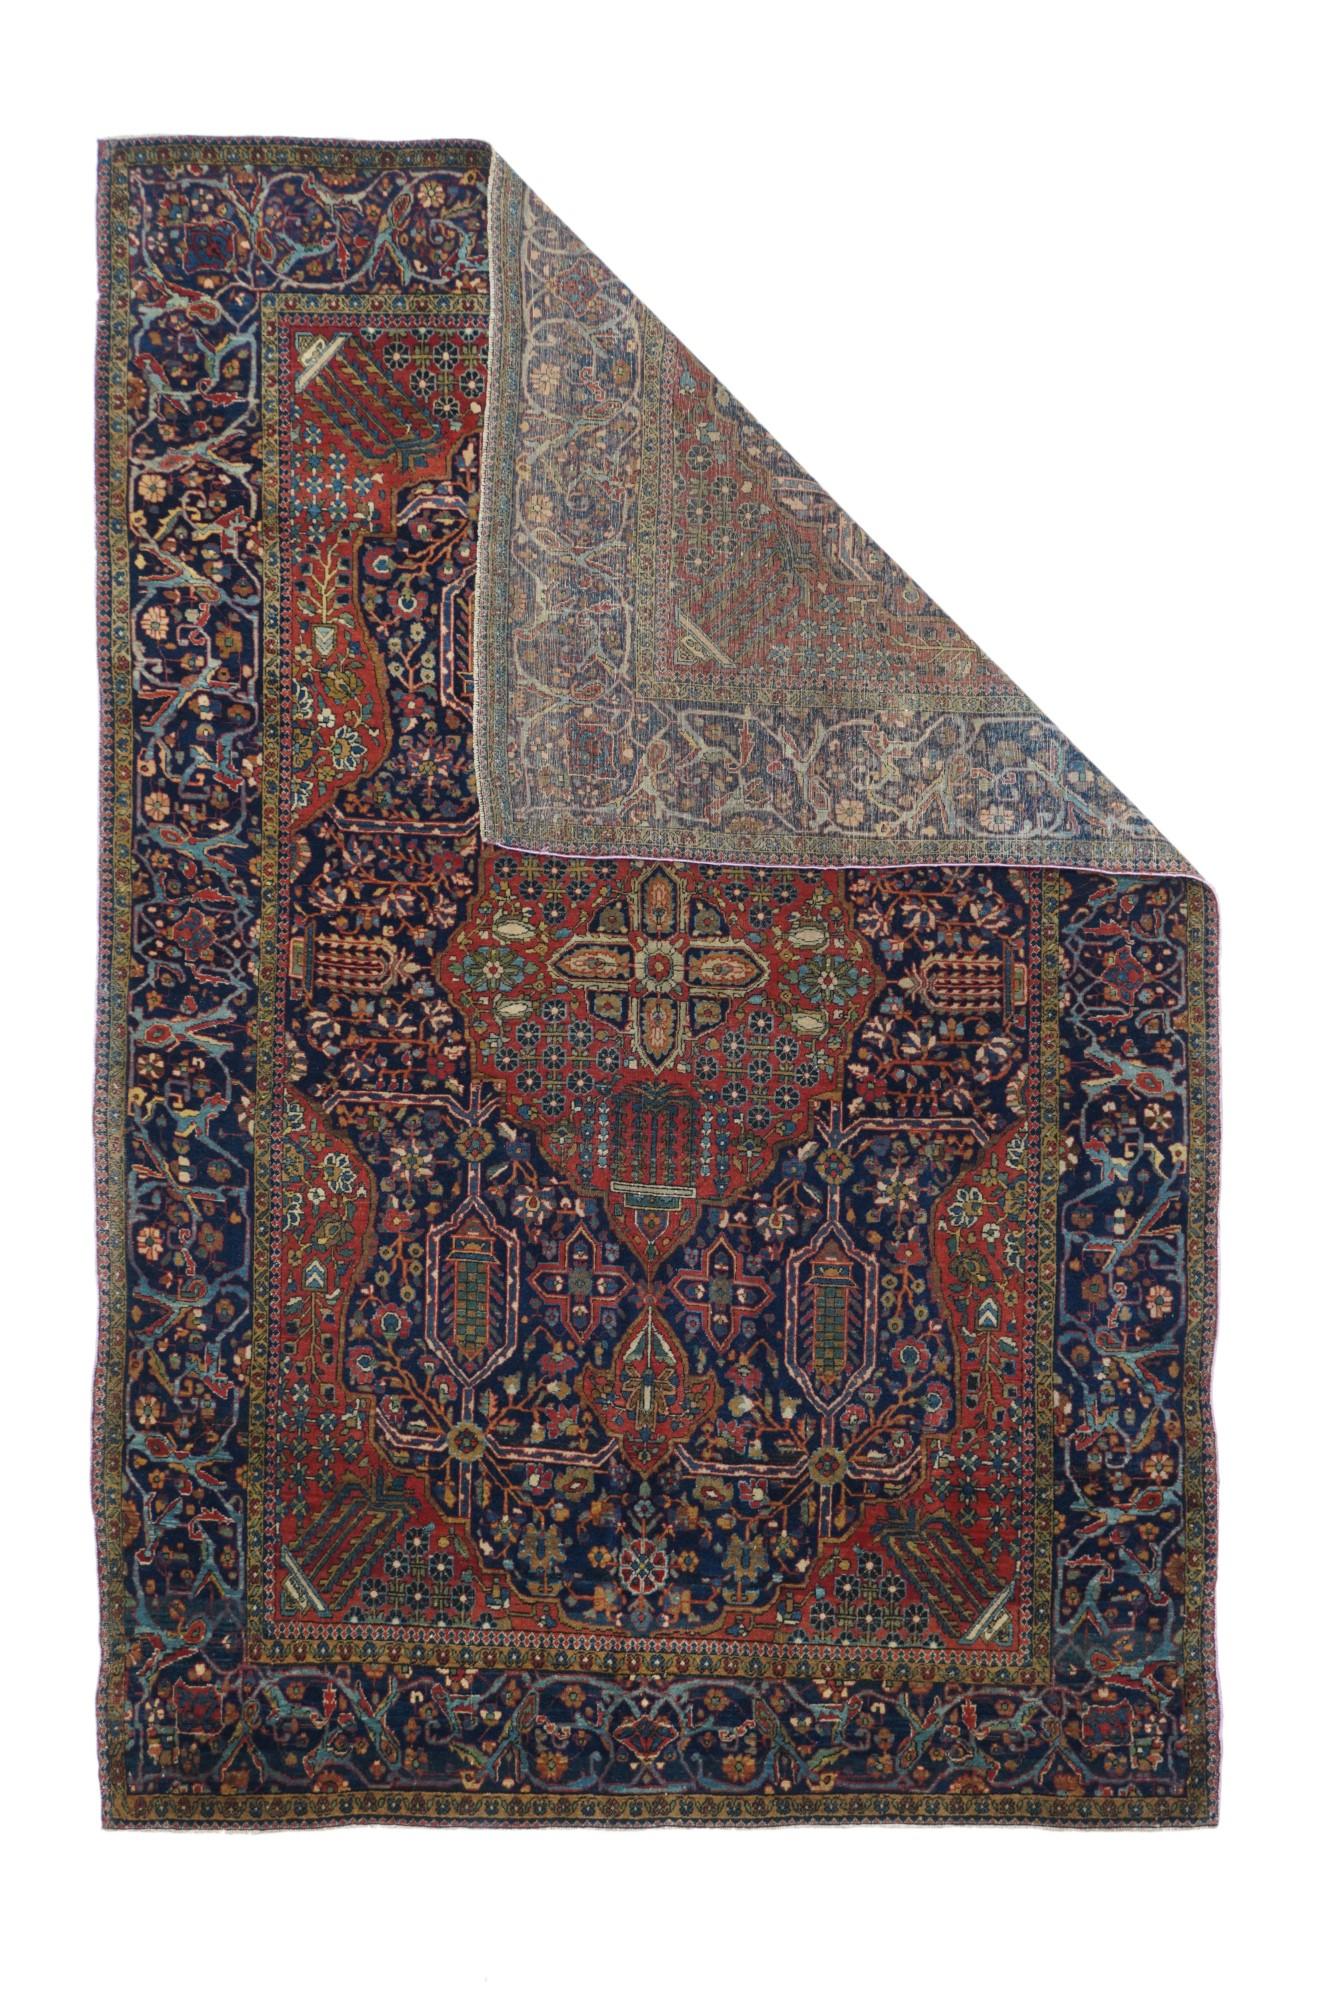 Mohtasham Kashan rug 4'4'' x 6'6''.